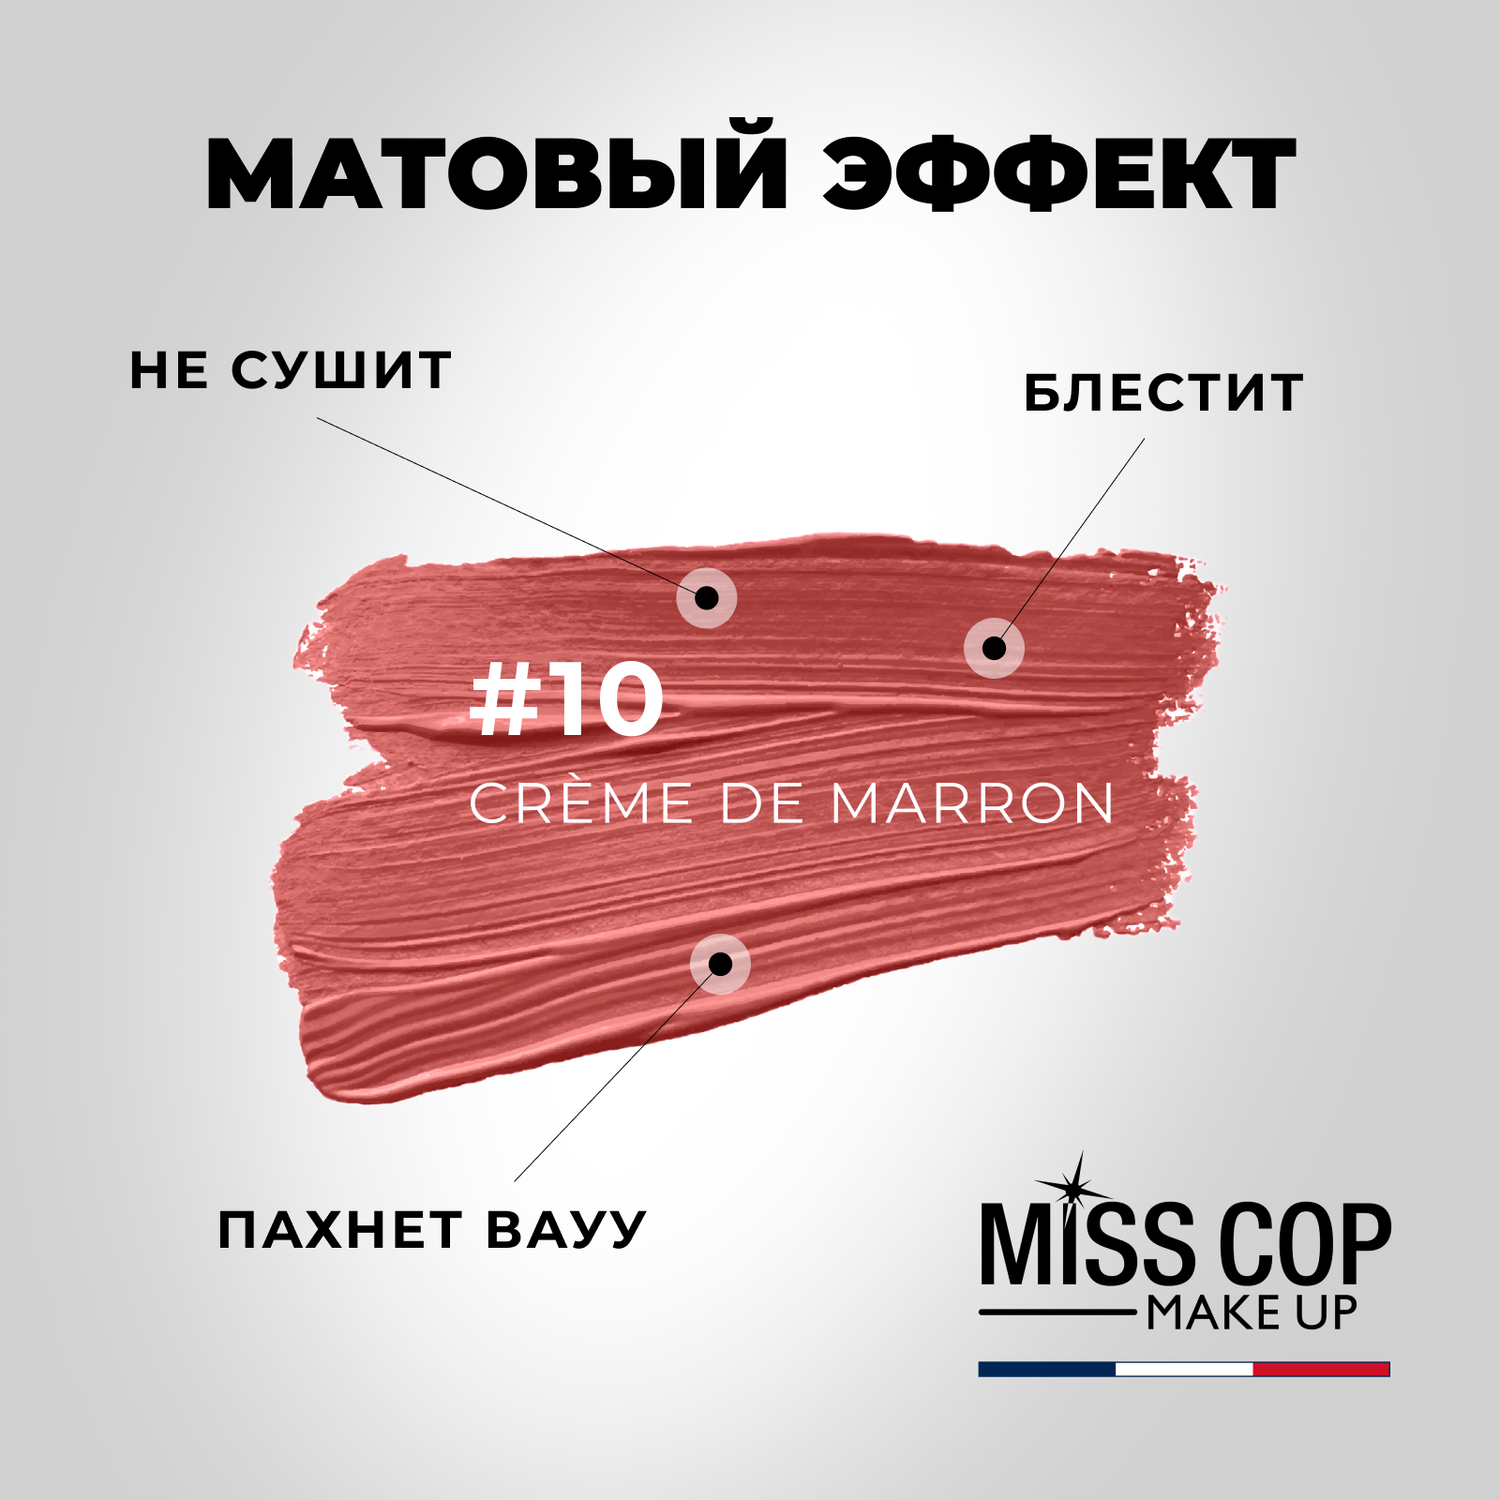 Помада губная матовая Miss Cop Франция цвет 10 Creme de marron каштановый крем 3 г - фото 3